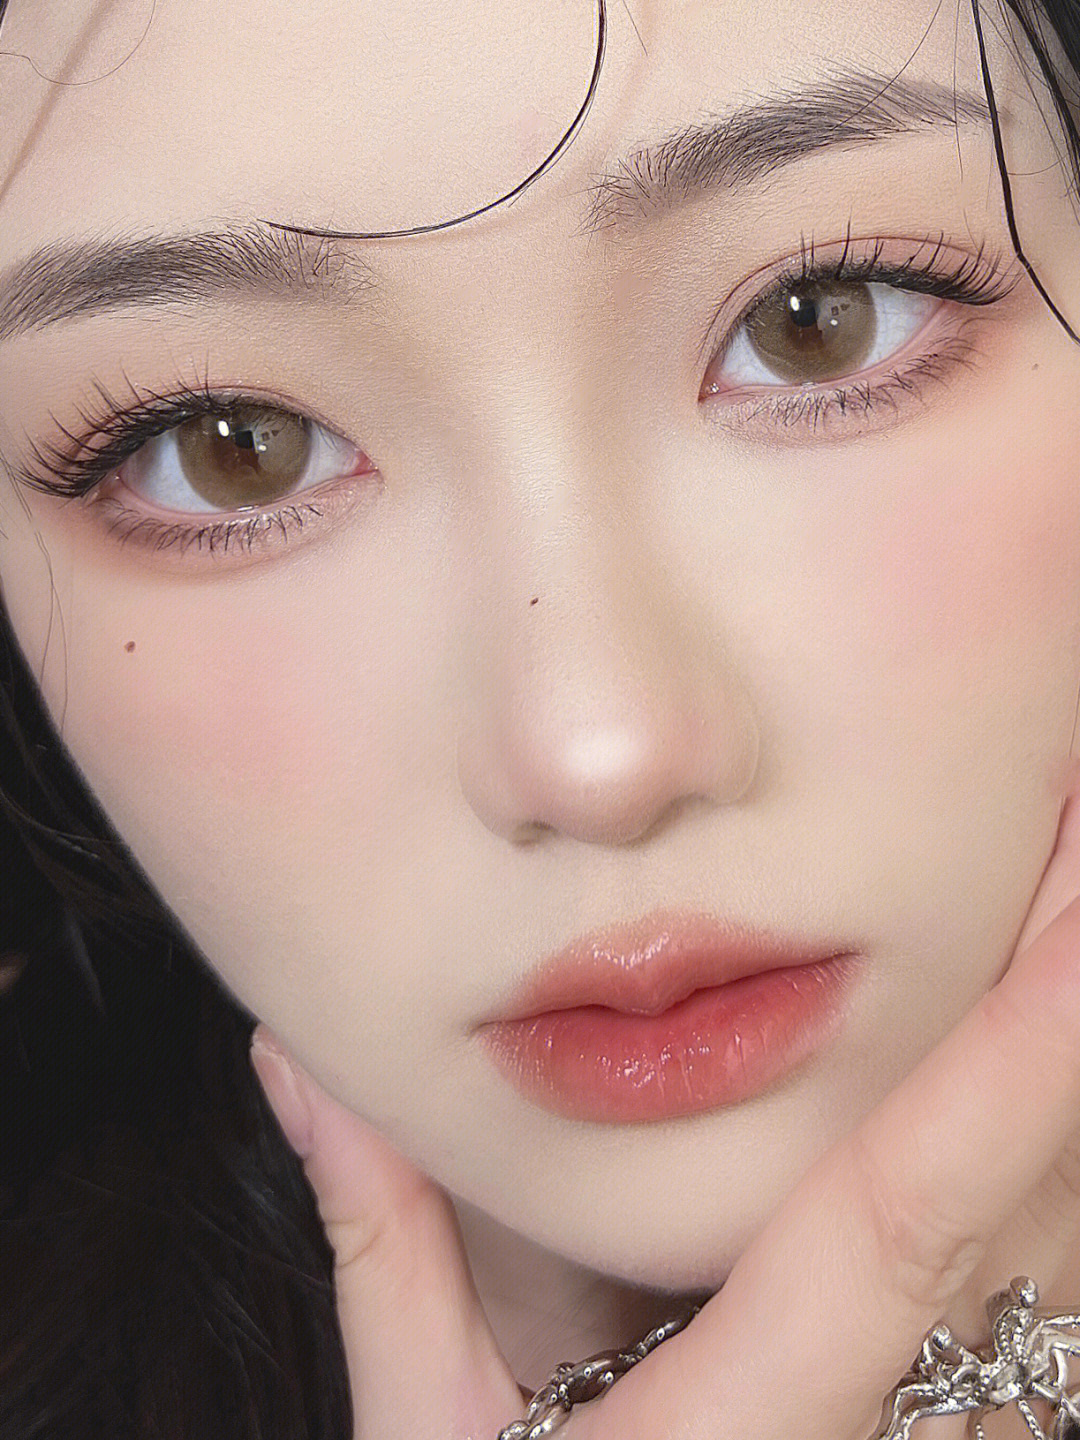 琥珀色瞳孔 中国人图片